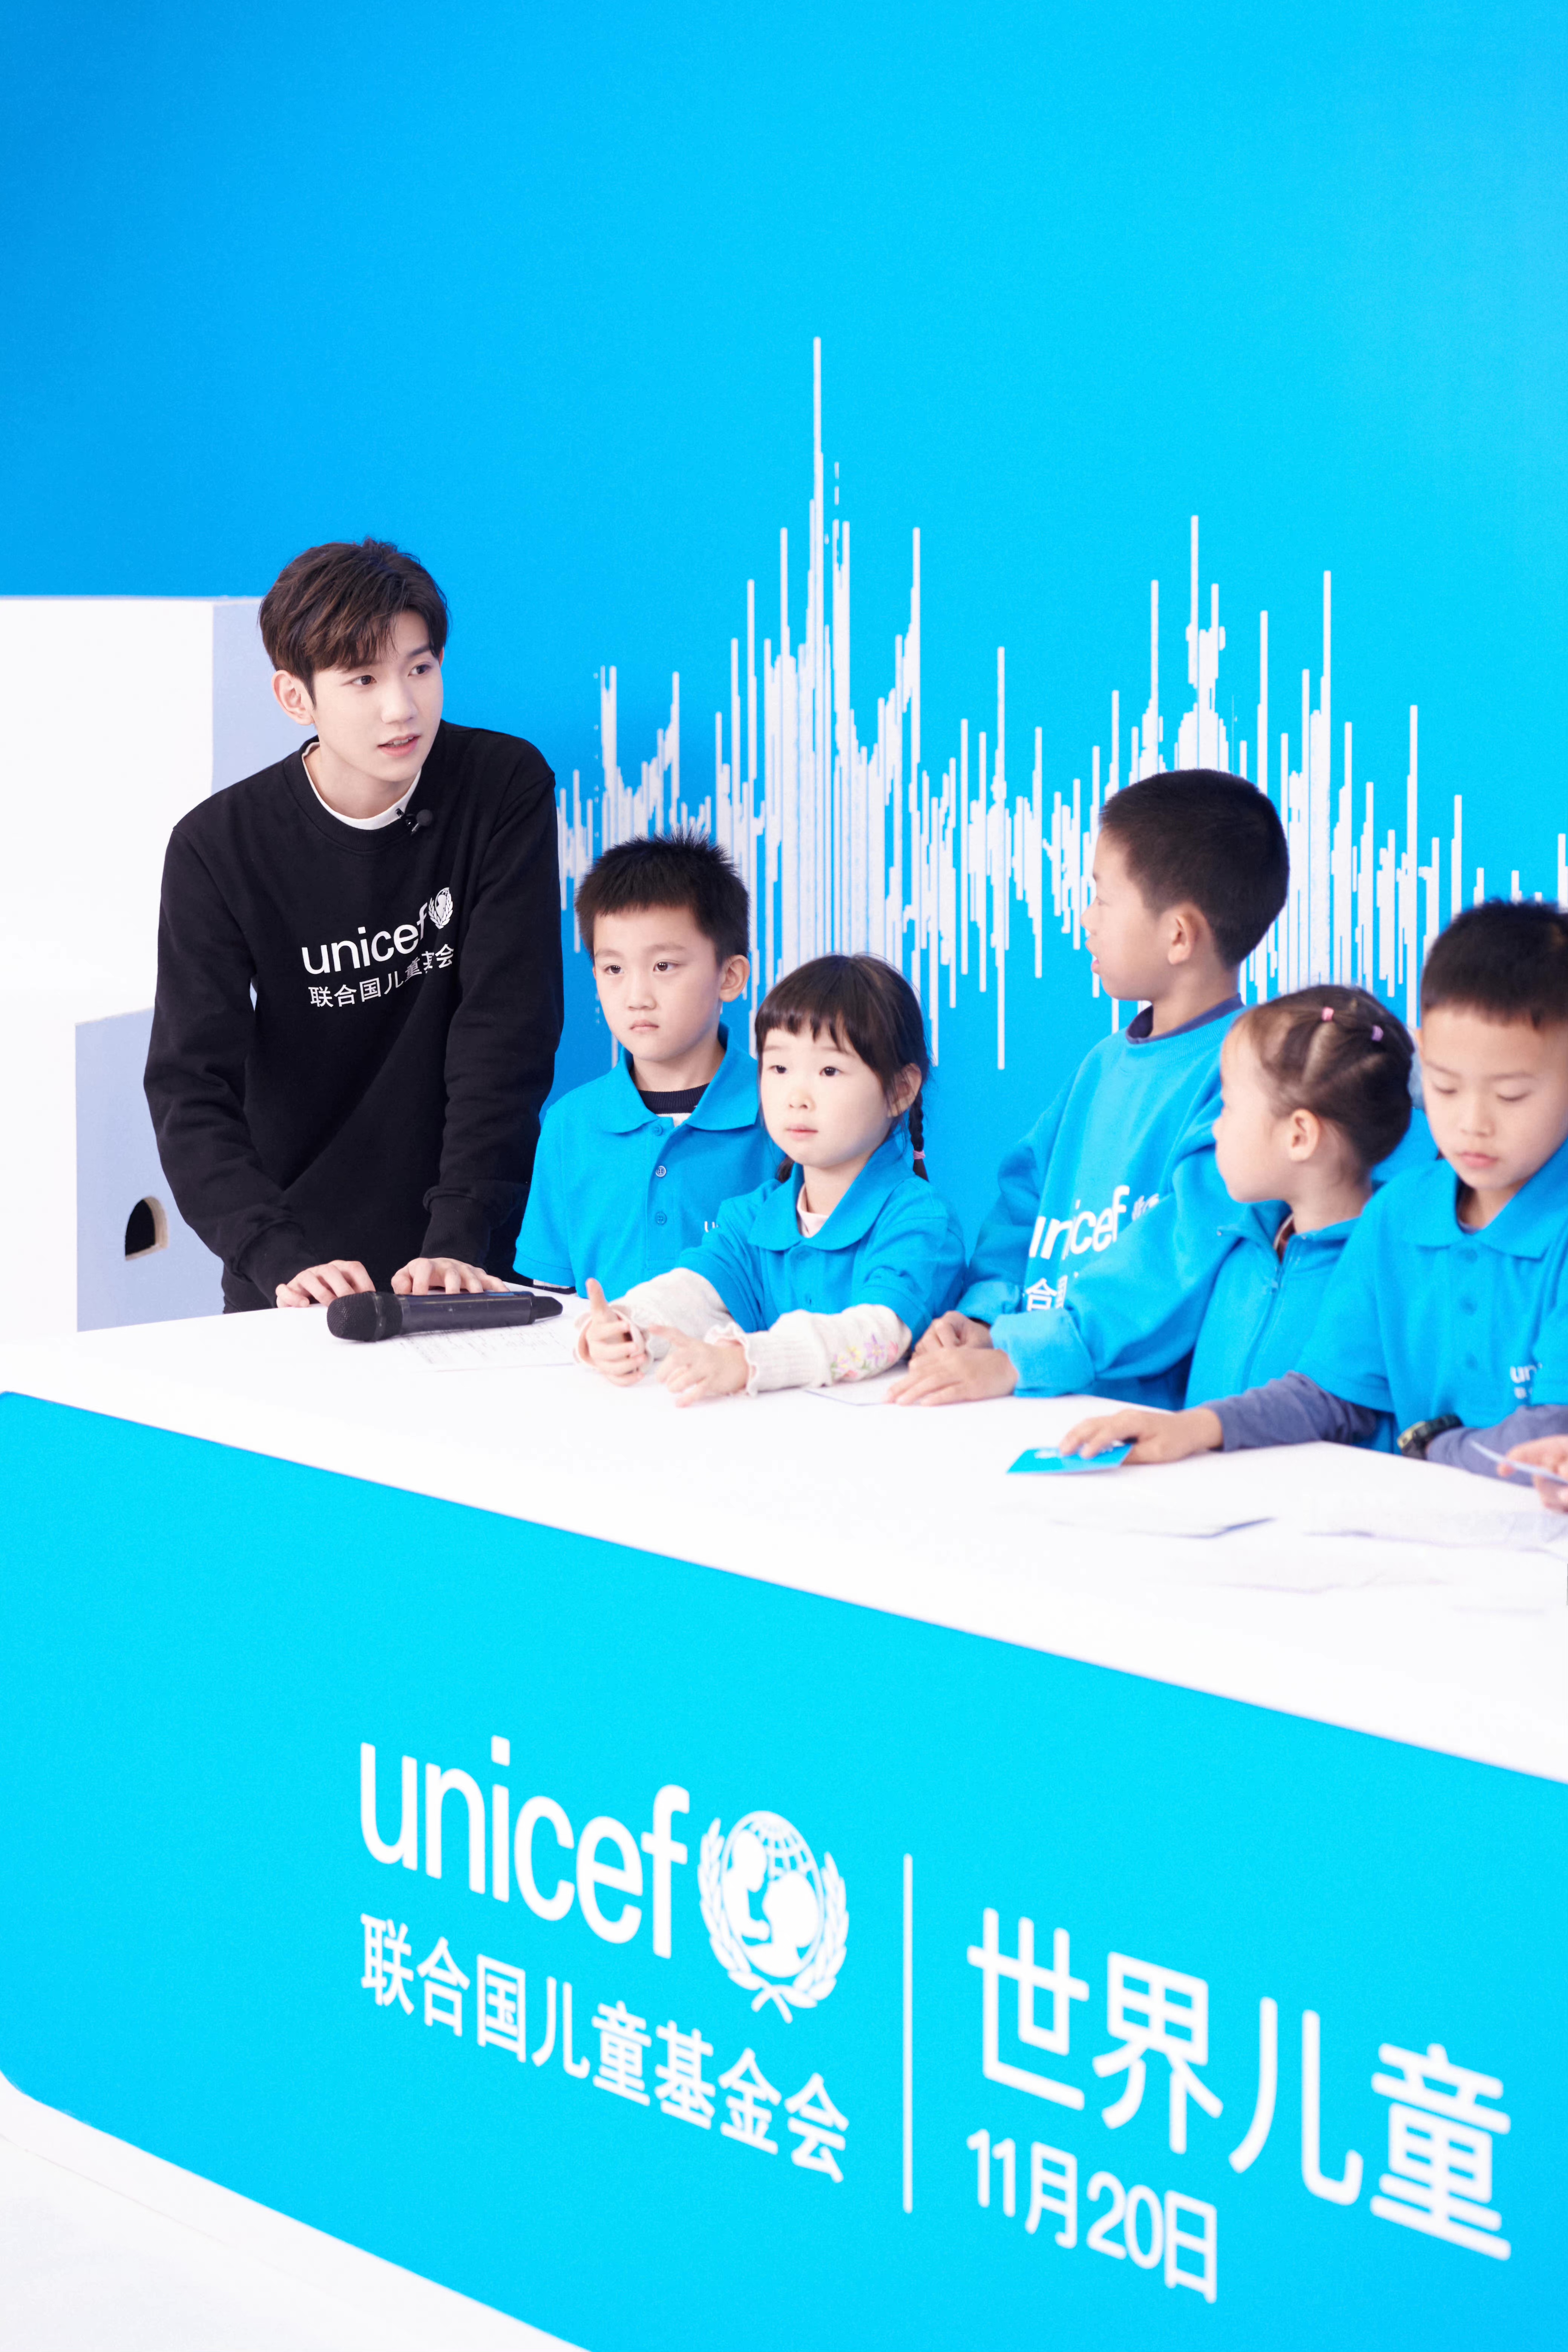 2021年11月20日，在北京的一个演播室里，联合国儿童基金会大使王源在世界儿童日庆祝活动的网络直播节目中教孩子们唱世界儿童日主题曲《在未来》。联合国儿童基金会在当天早些时候发布了这首由王源创作的歌曲，对儿童青少年未来的期许激发了王源创作这首歌的灵感。